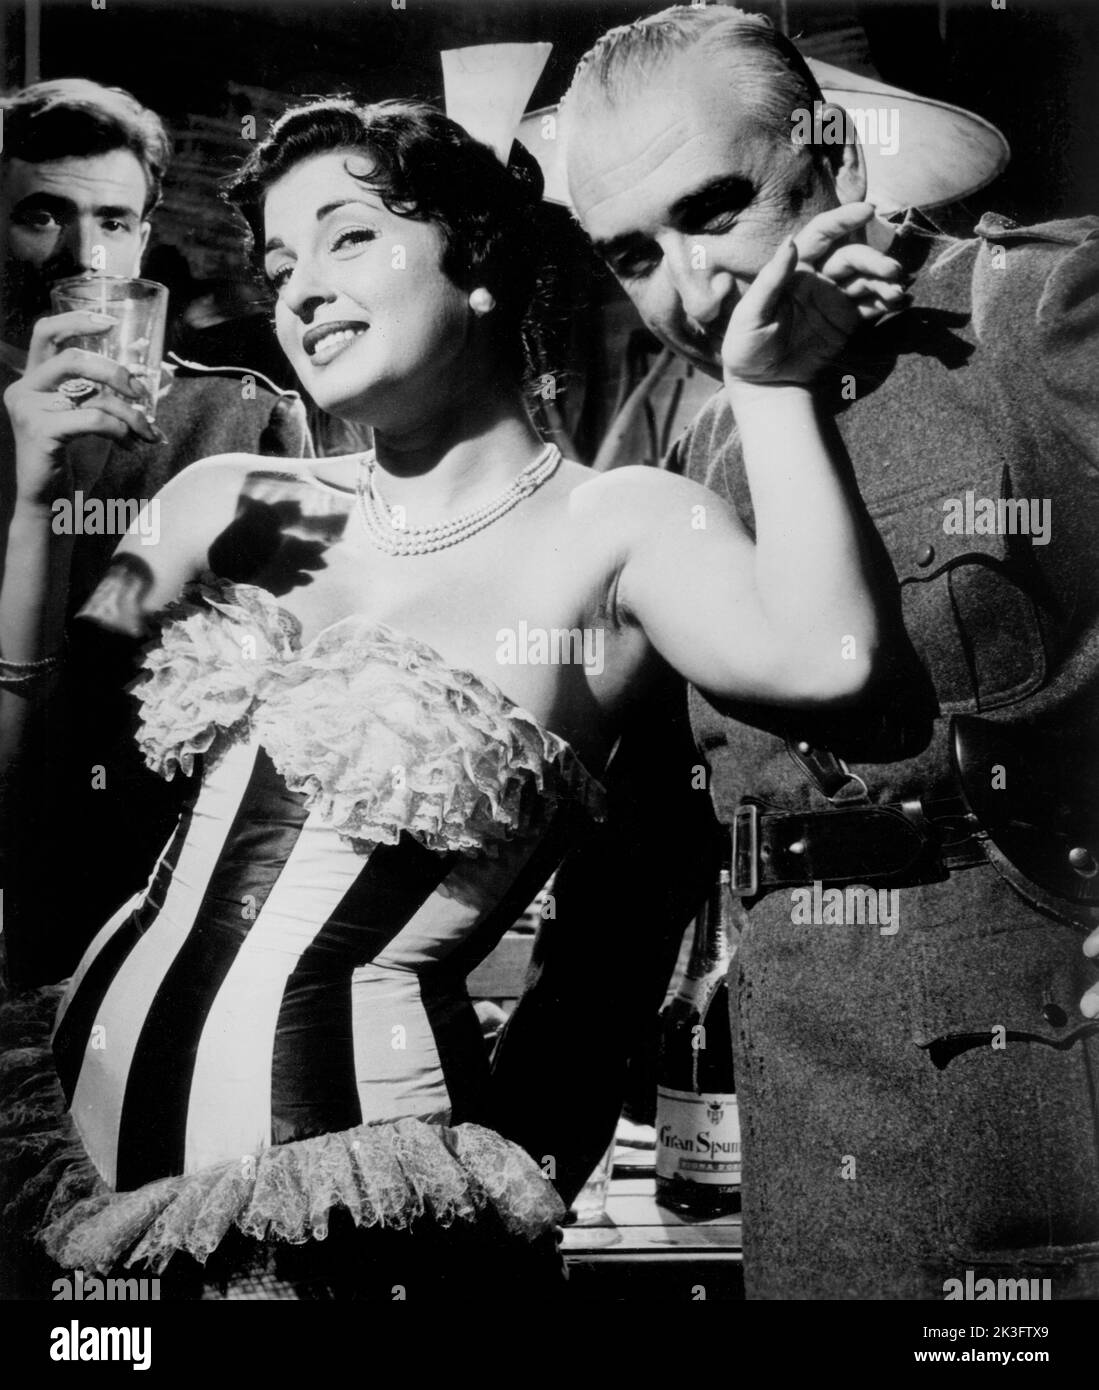 Silvana Pampanini, on-set of the Italian Film, 'A Day in Court', Italian: 'Un giorno in pretura', Minerva Film, Ultra Pictures Corp., 1954 Stock Photo